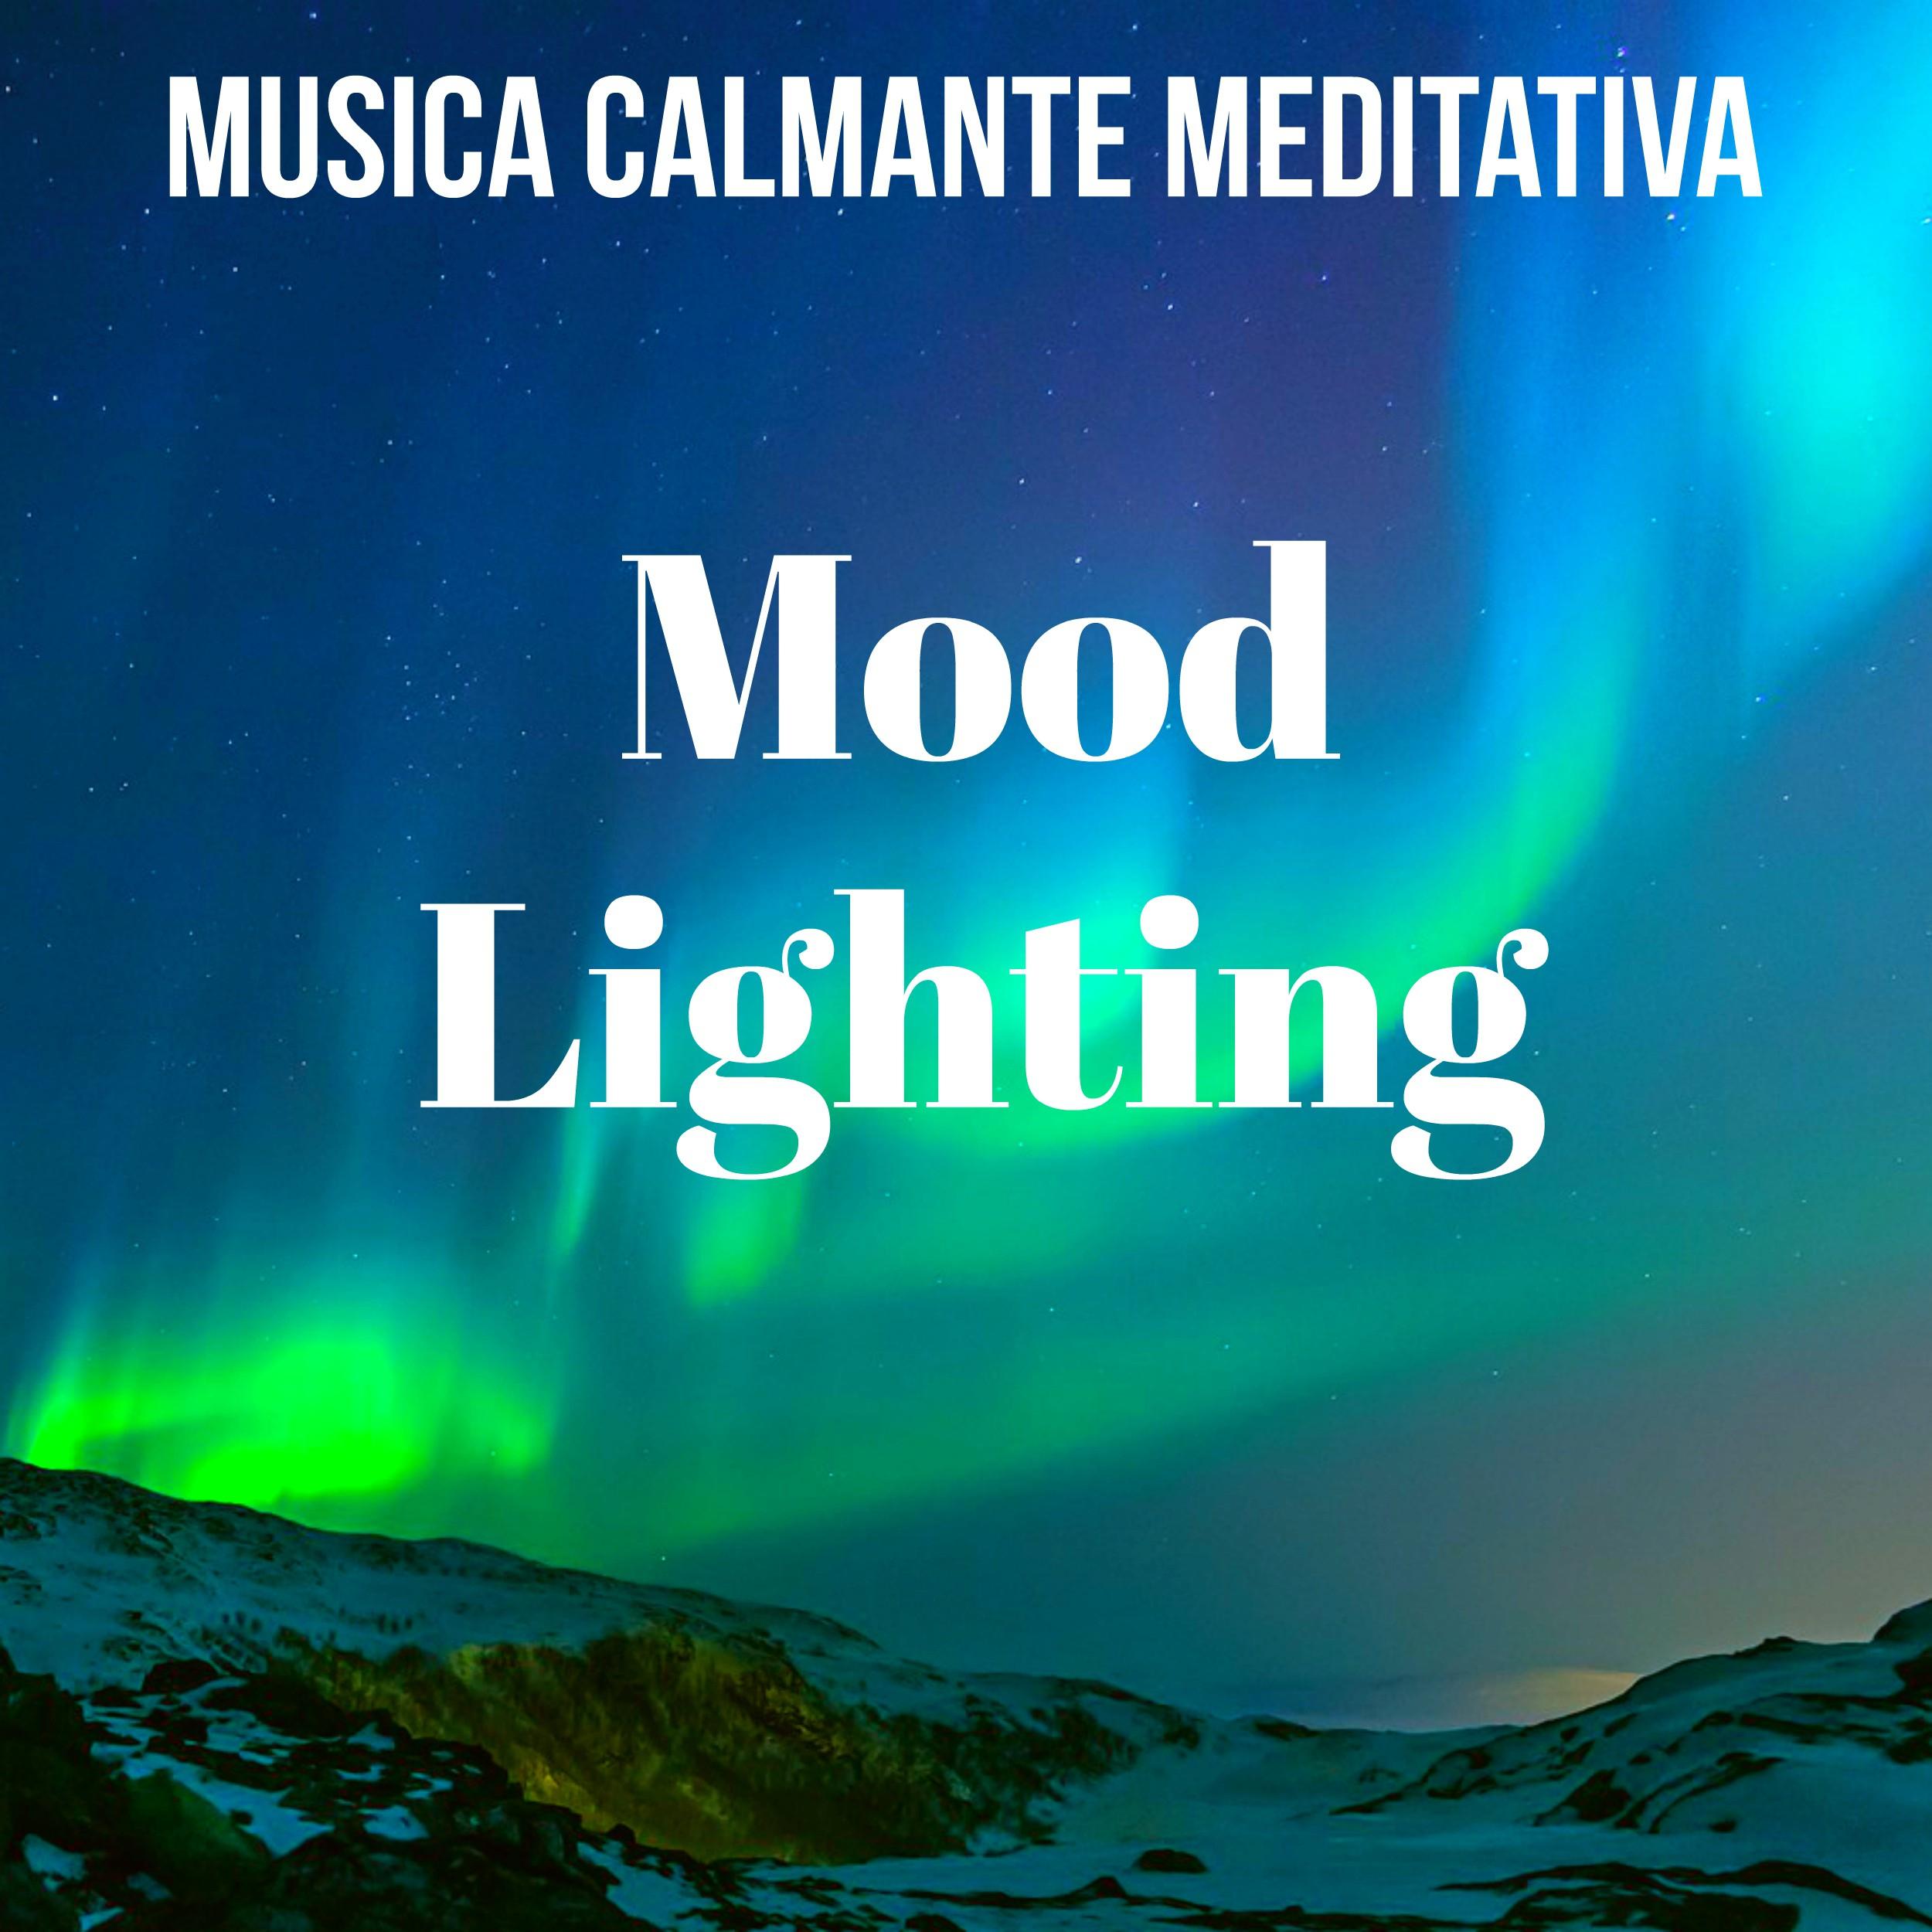 Mood Lighting - Musica Calmante Meditativa per Potere della Mente Terapia Chakra Pensieri Positivi con Suoni Strumentali New Age Terapeutici